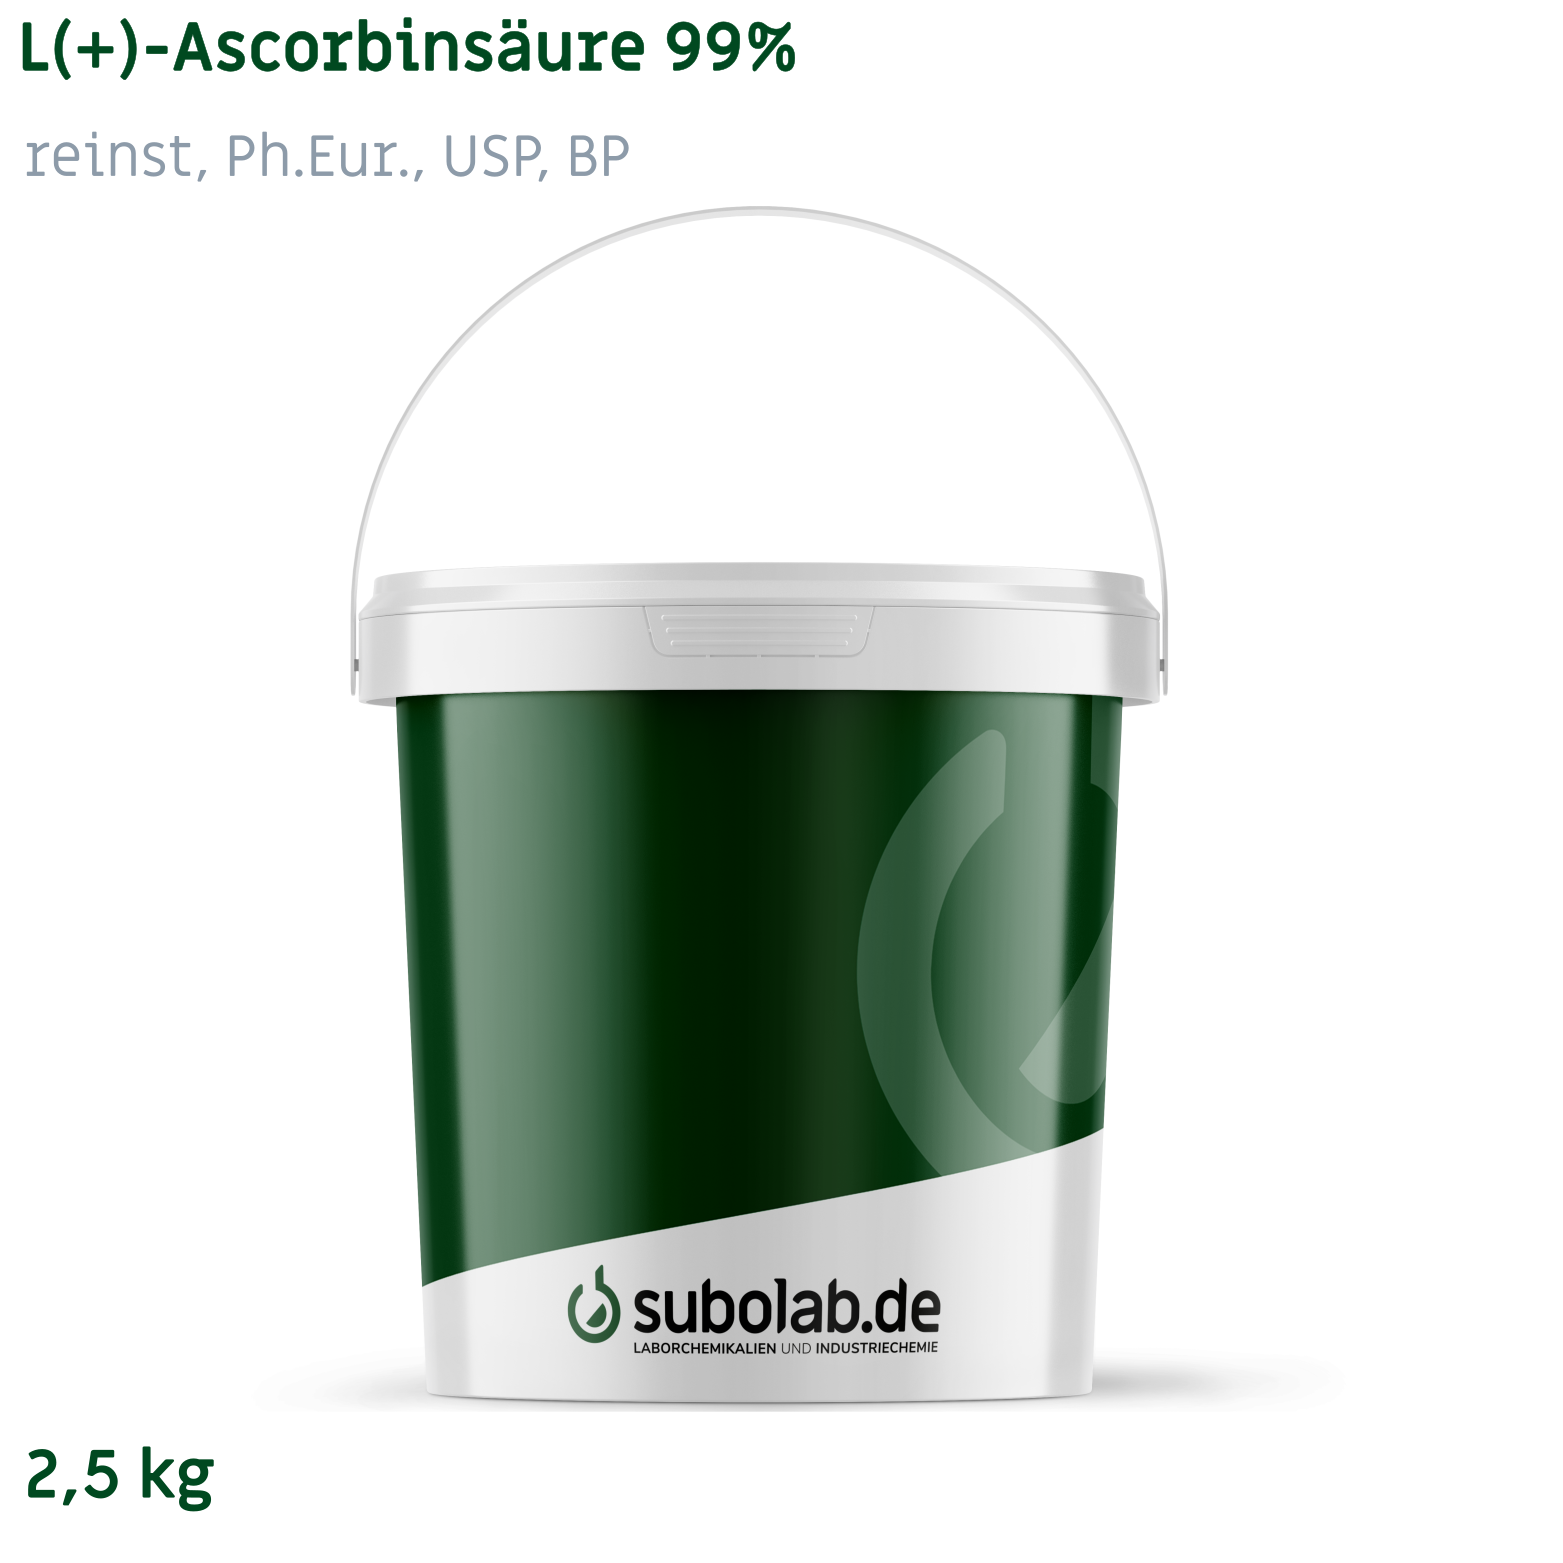 Bild von L(+)-Ascorbinsäure 99% reinst, Ph.Eur., USP, BP (2,5 kg)